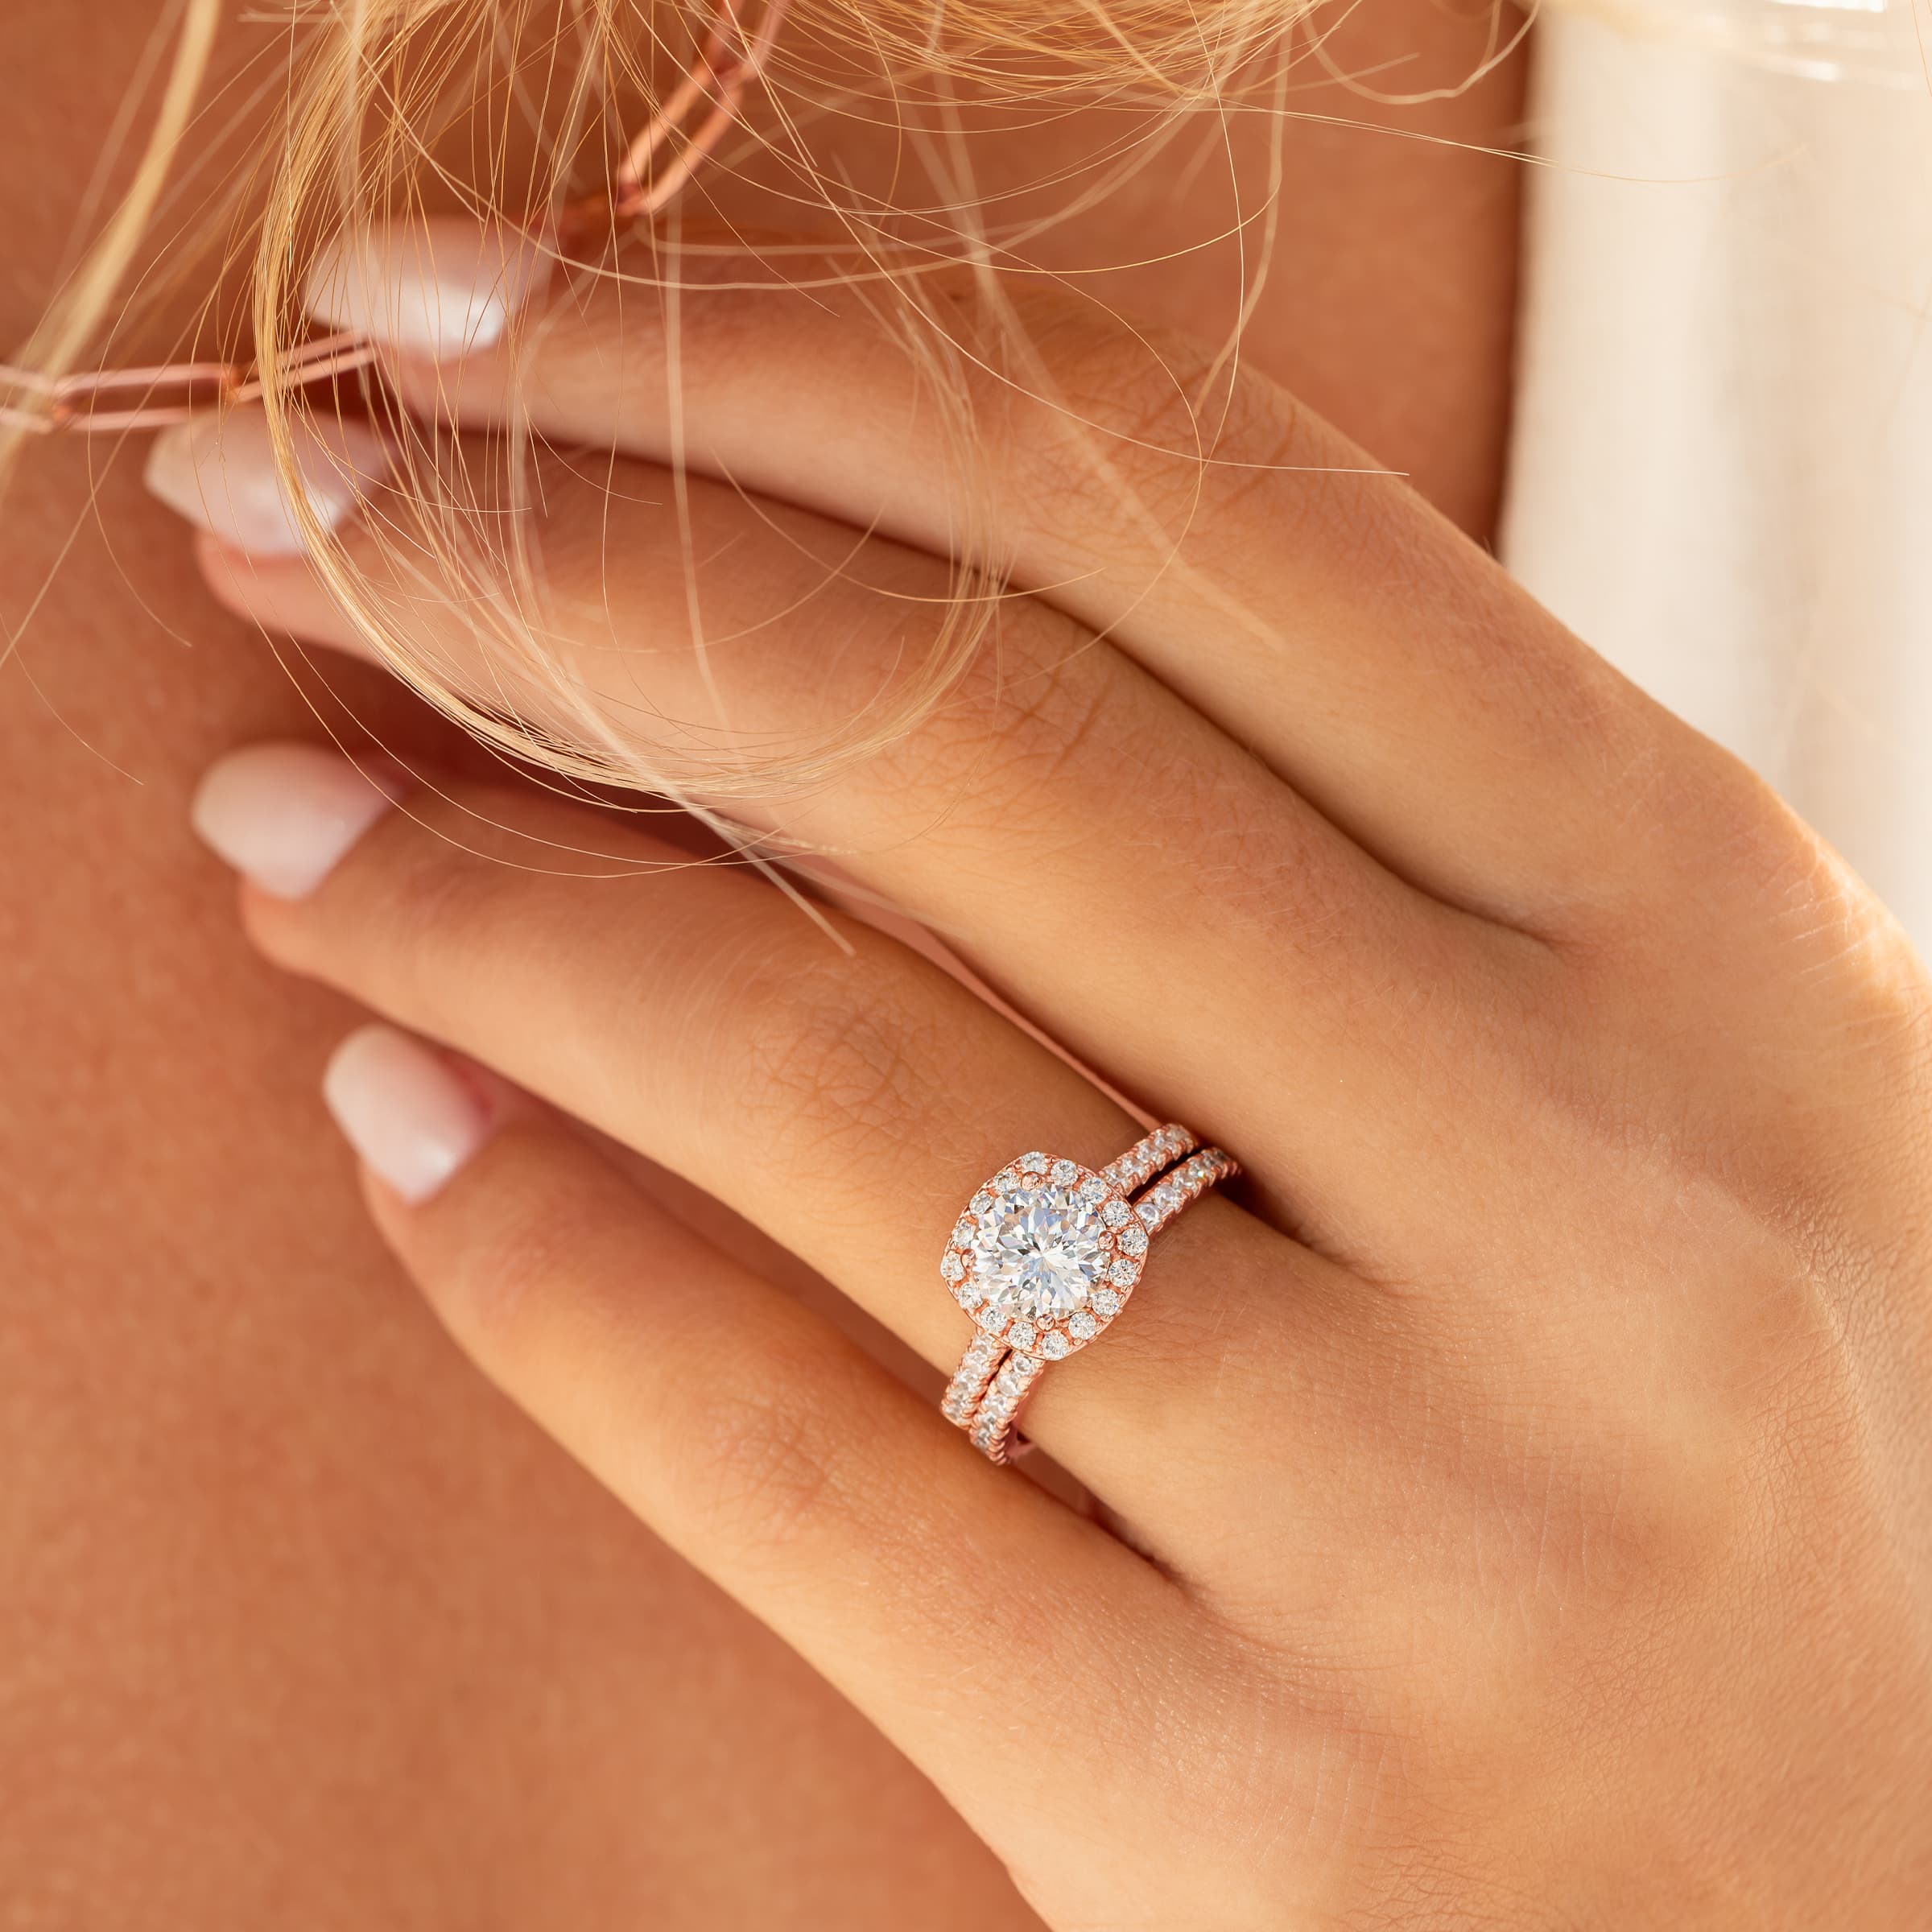 Valerie Rose Gold Diamond Ring